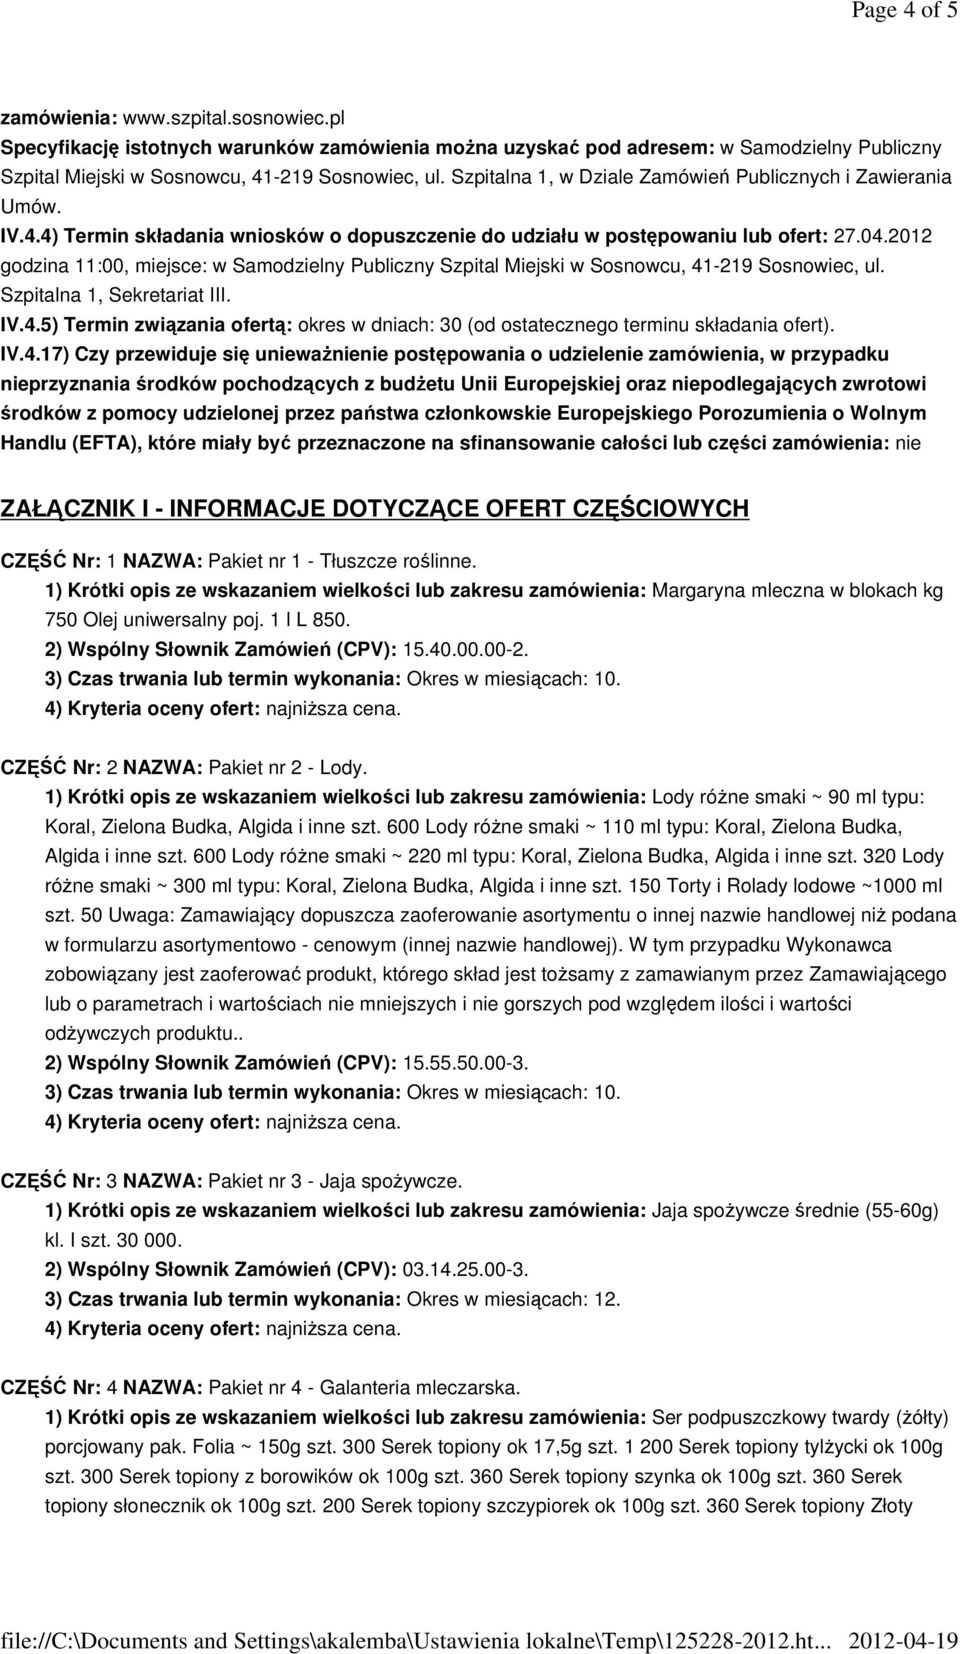 2012 godzina 11:00, miejsce: w Samodzielny Publiczny Szpital Miejski w Sosnowcu, 41-219 Sosnowiec, ul. Szpitalna 1, Sekretariat III. IV.4.5) Termin związania ofertą: okres w dniach: 30 (od ostatecznego terminu składania ofert).